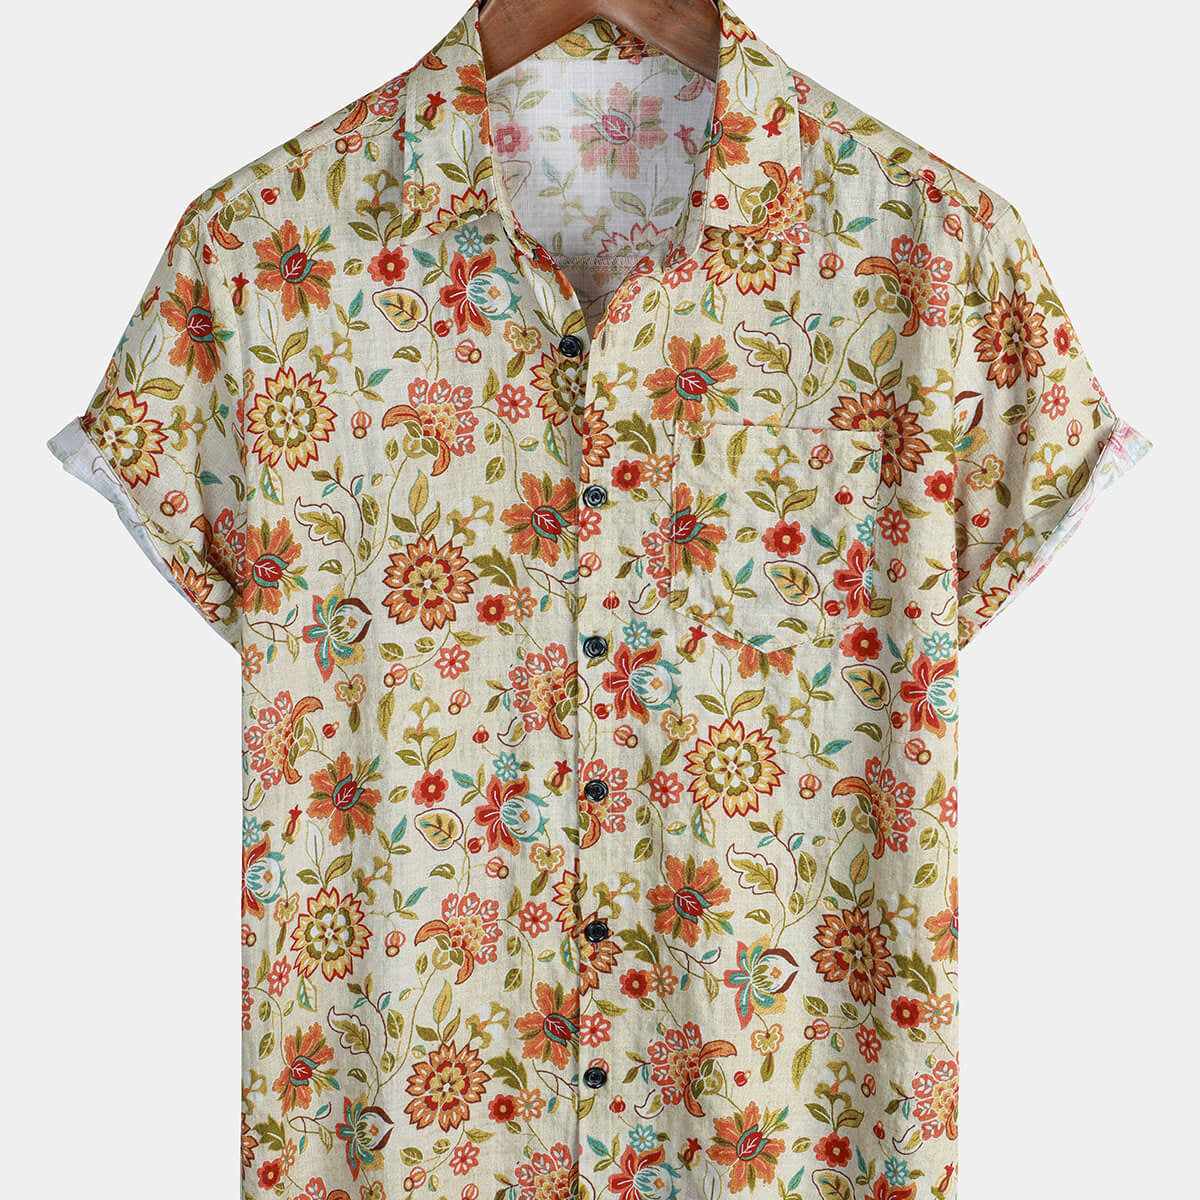 Men's Vintage Floral Hawaiian Short Sleeve Button Up Summer Cotton Shirt